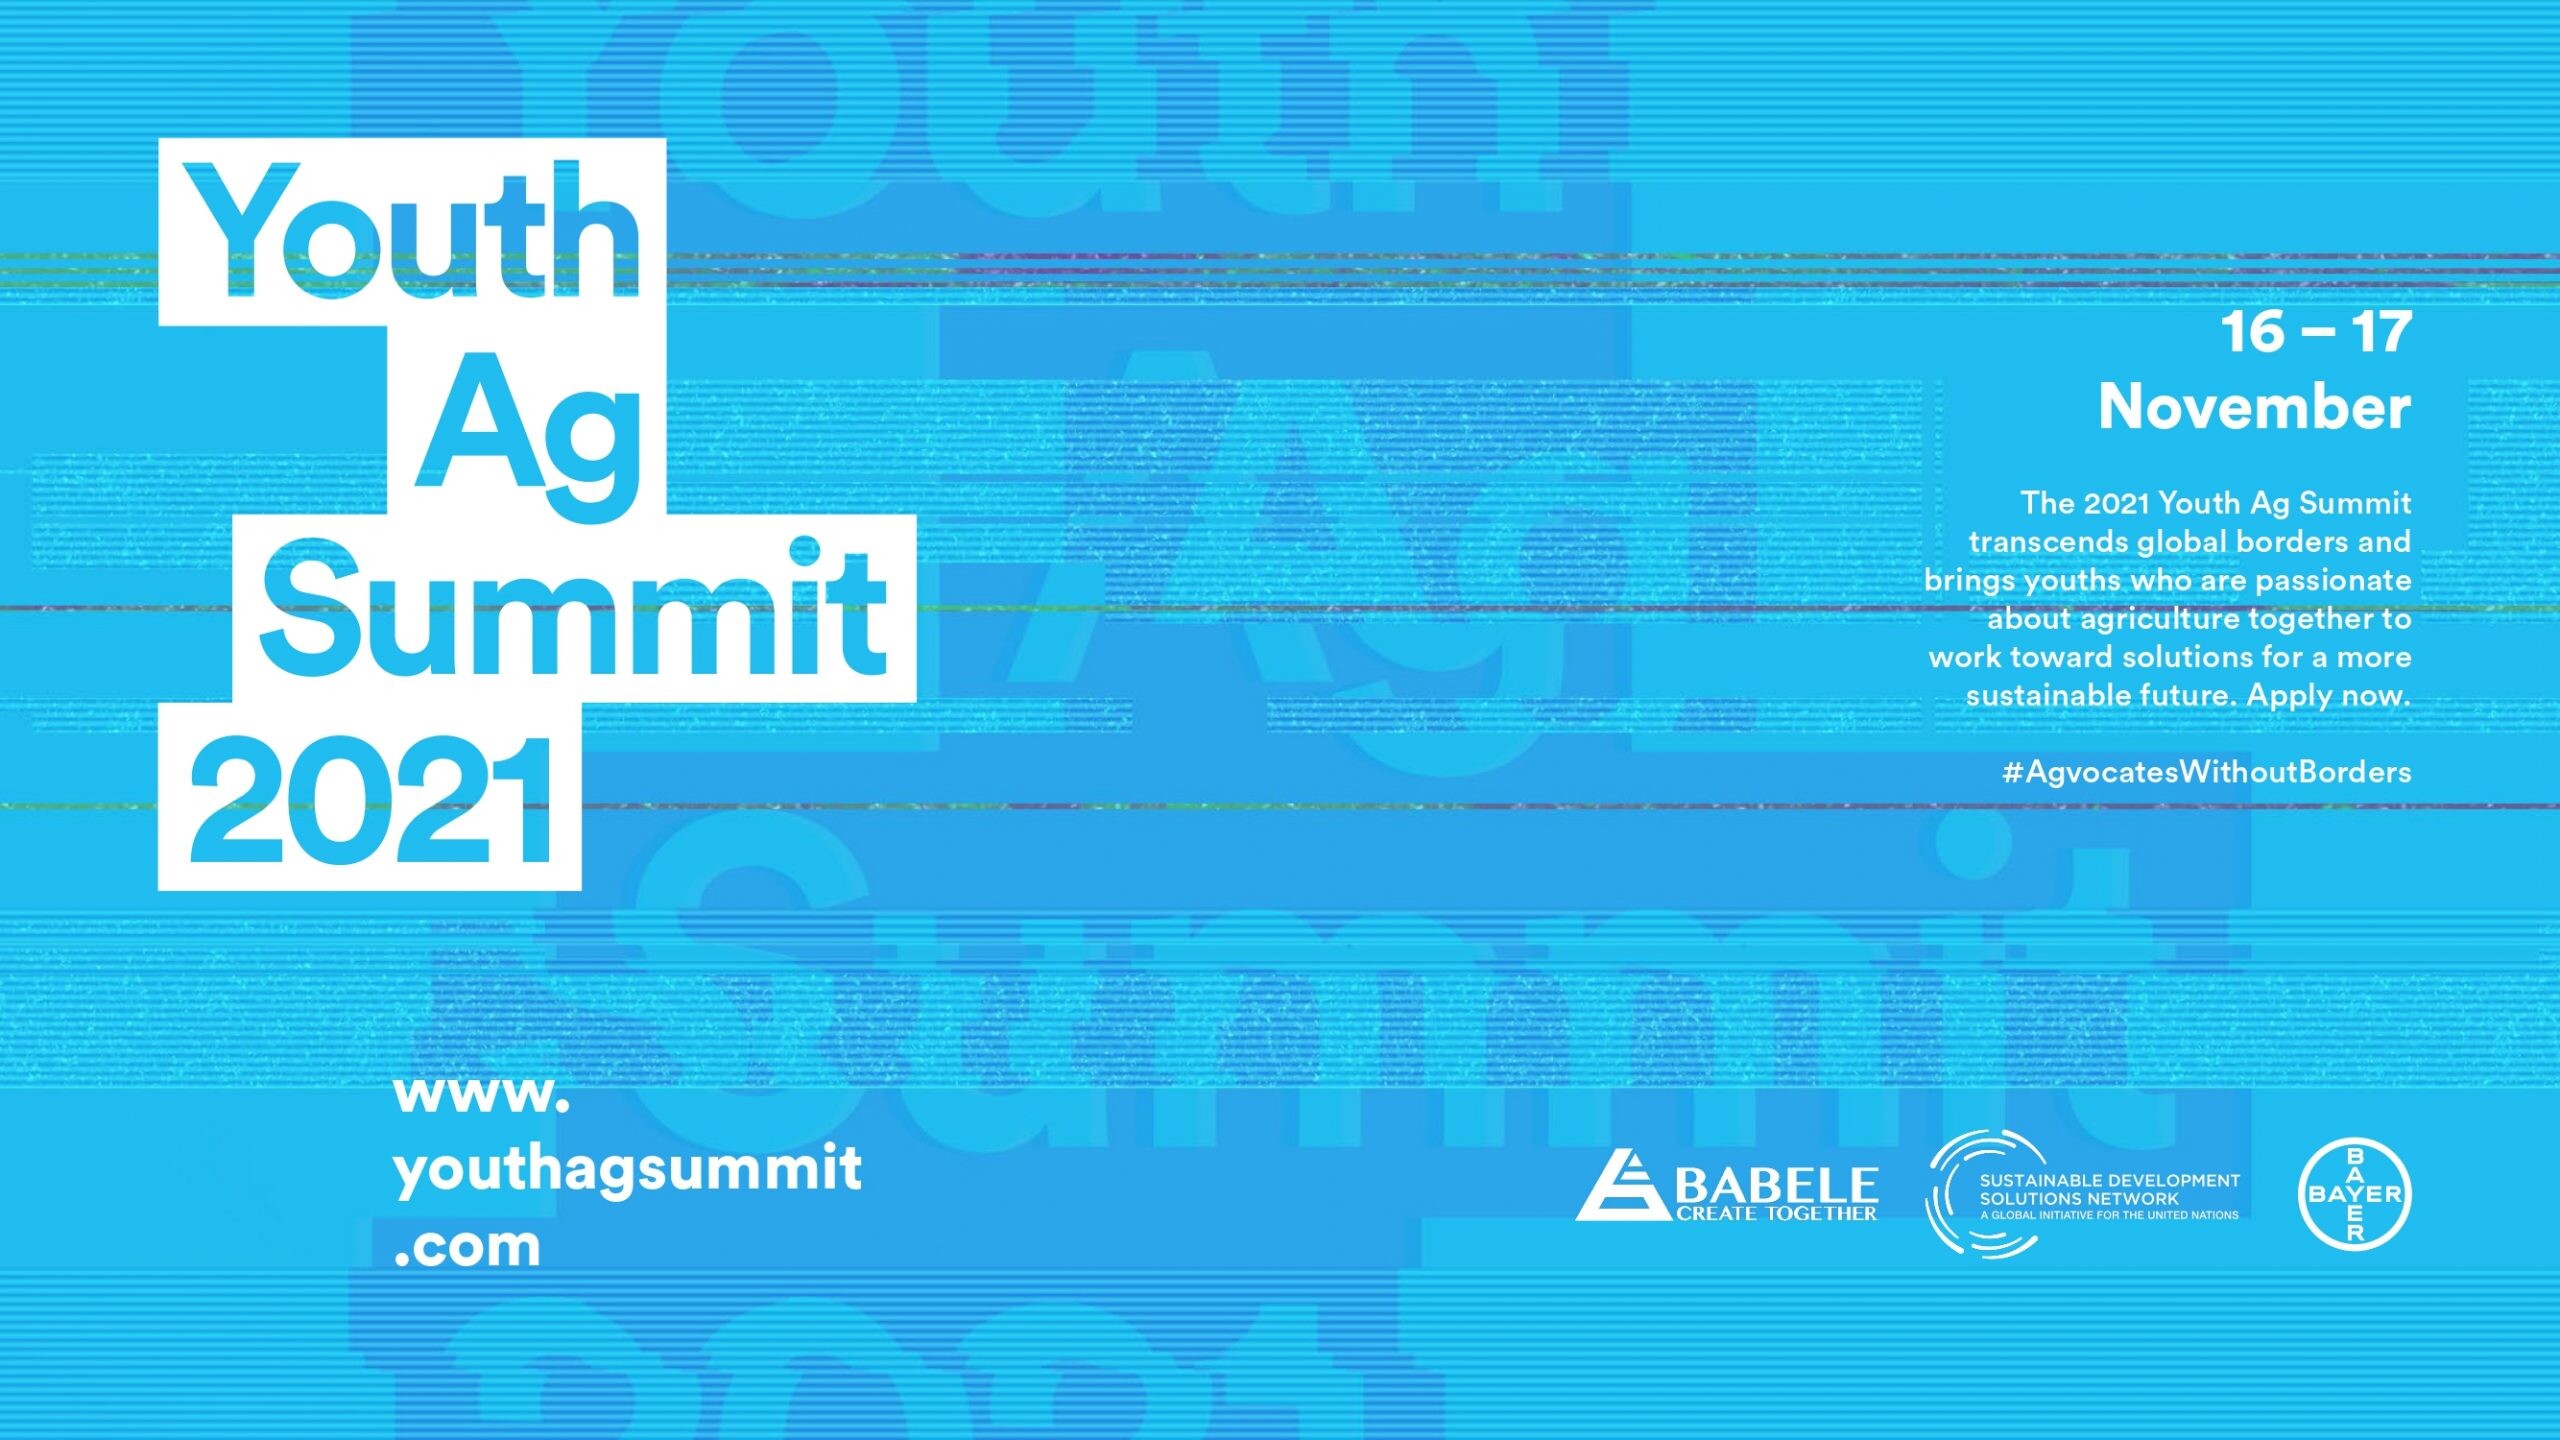 ไบเออร์มุ่งให้ความสำคัญกับ "การหล่อเลี้ยงโลกที่หิวโหย" โดยการเชิญชวนผู้นำเยาวชนจากประเทศไทยให้สมัครเข้าร่วมการประชุมสุดยอดยุวชนเกษตร (Youth Ag Summit) ครั้งที่ 5